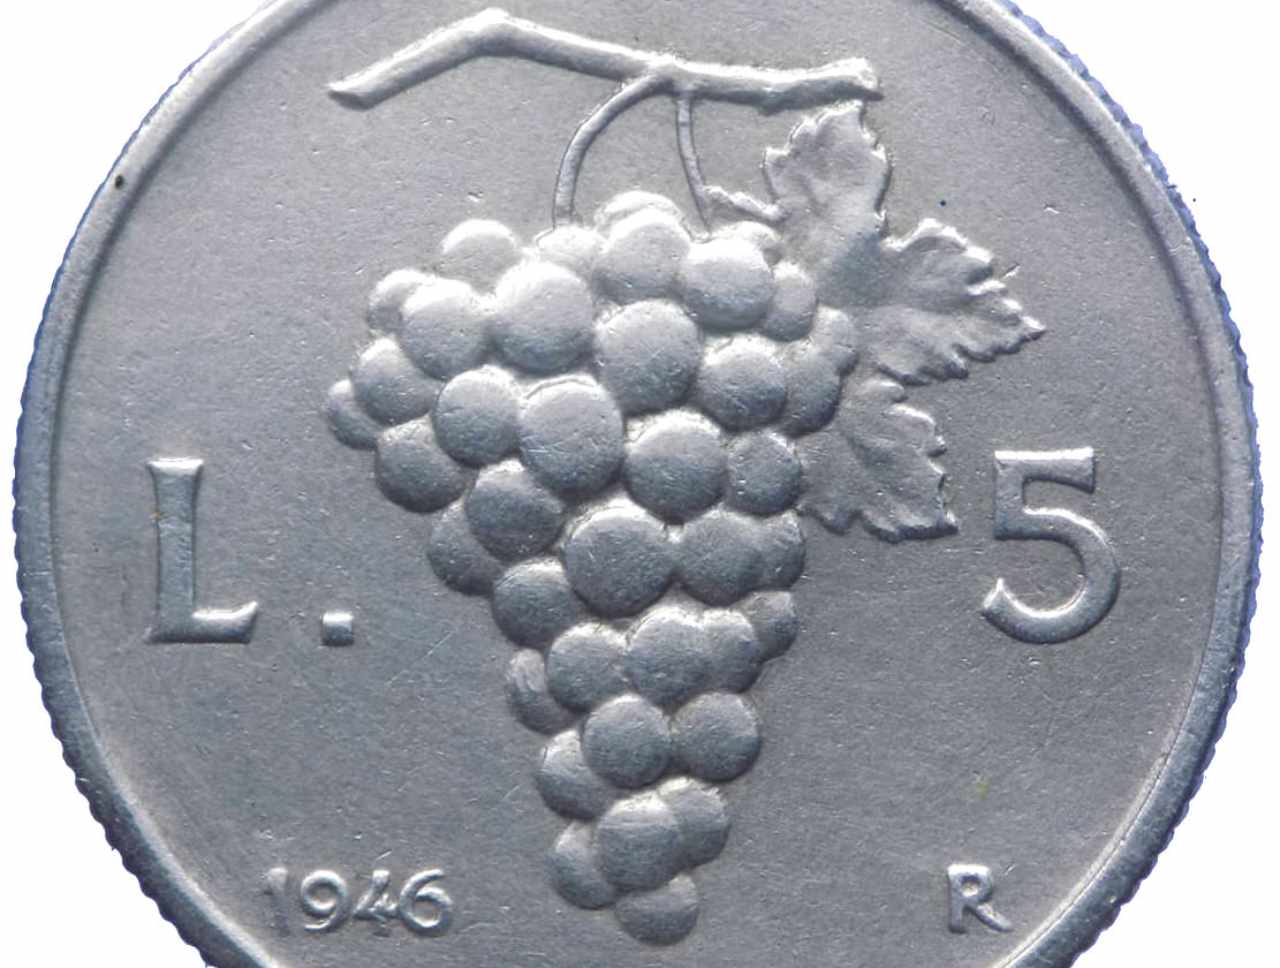 5 lire uva